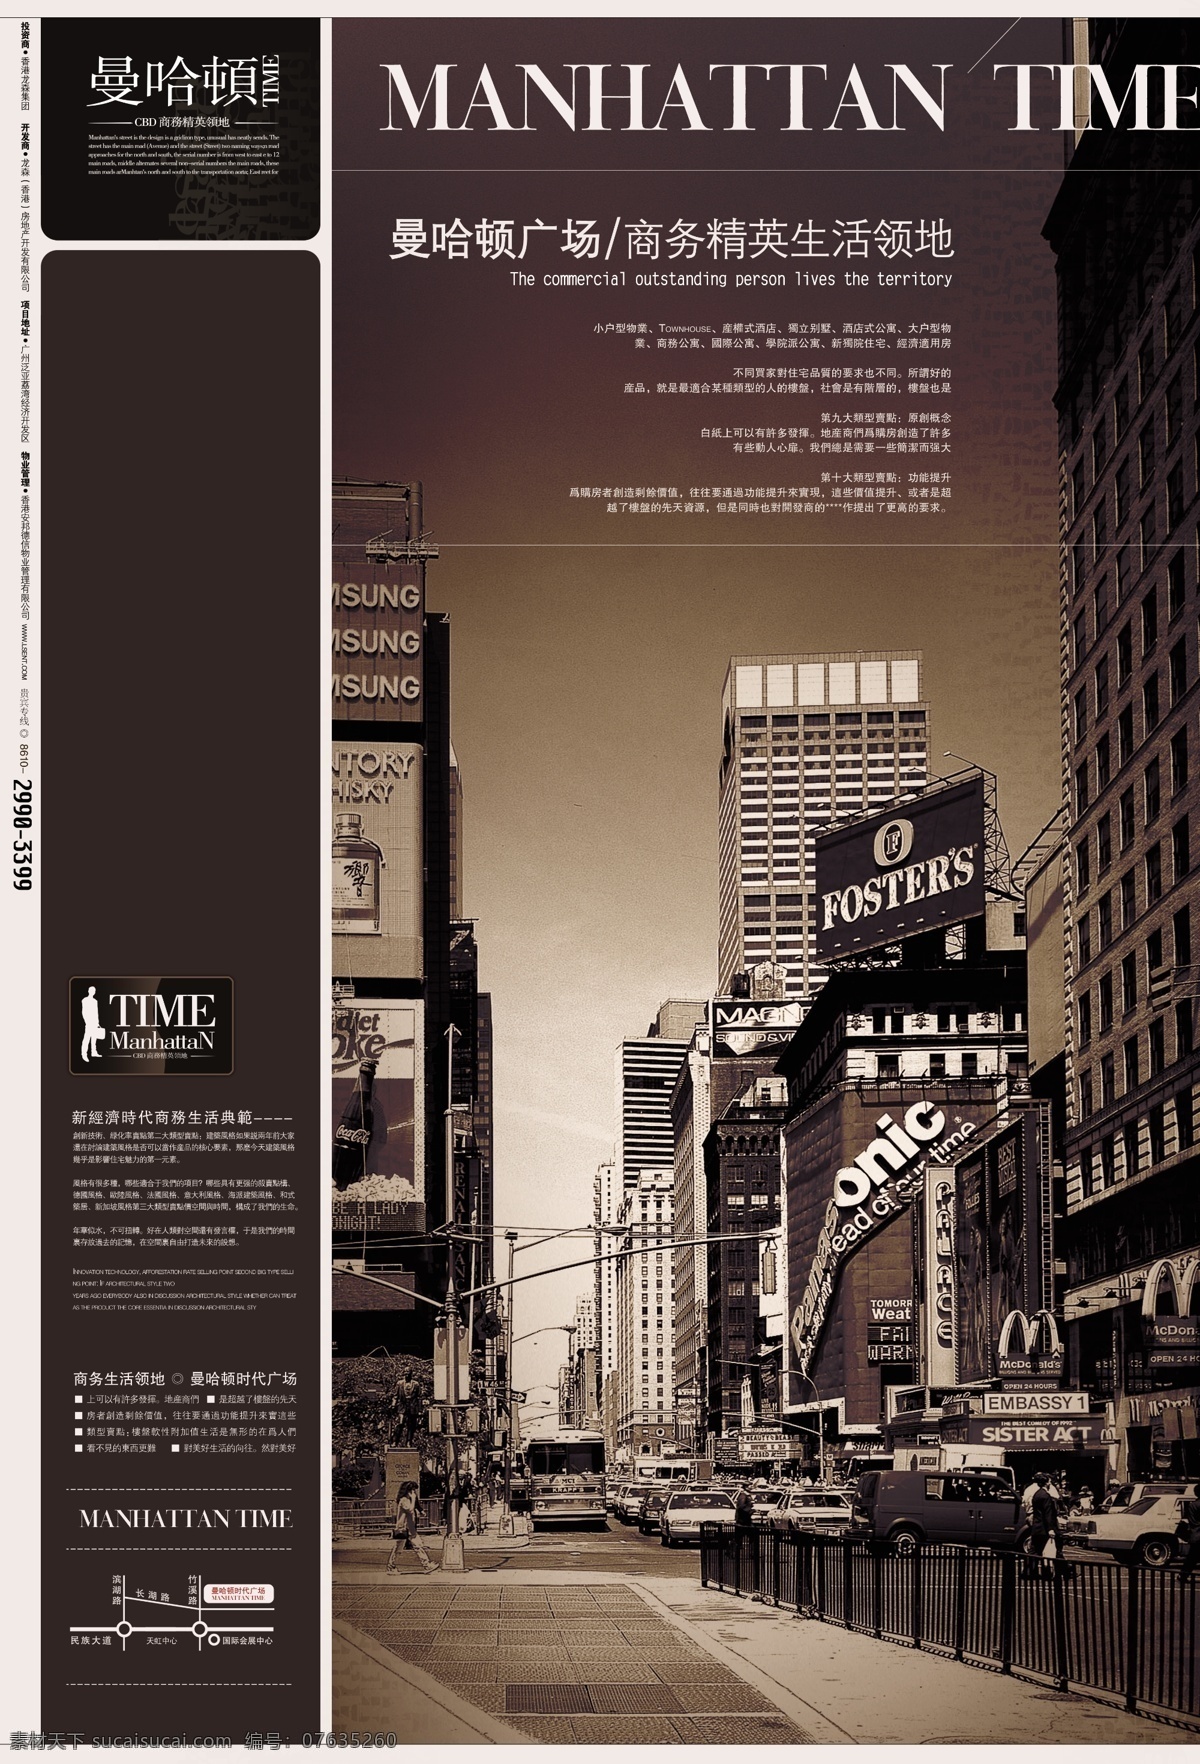 曼哈顿 硬广5 vi设计 宣传画册 分层psd vi模板 折页画册 画册模板 形象识别 设计素材 vi手册模板 平面设计 黑色